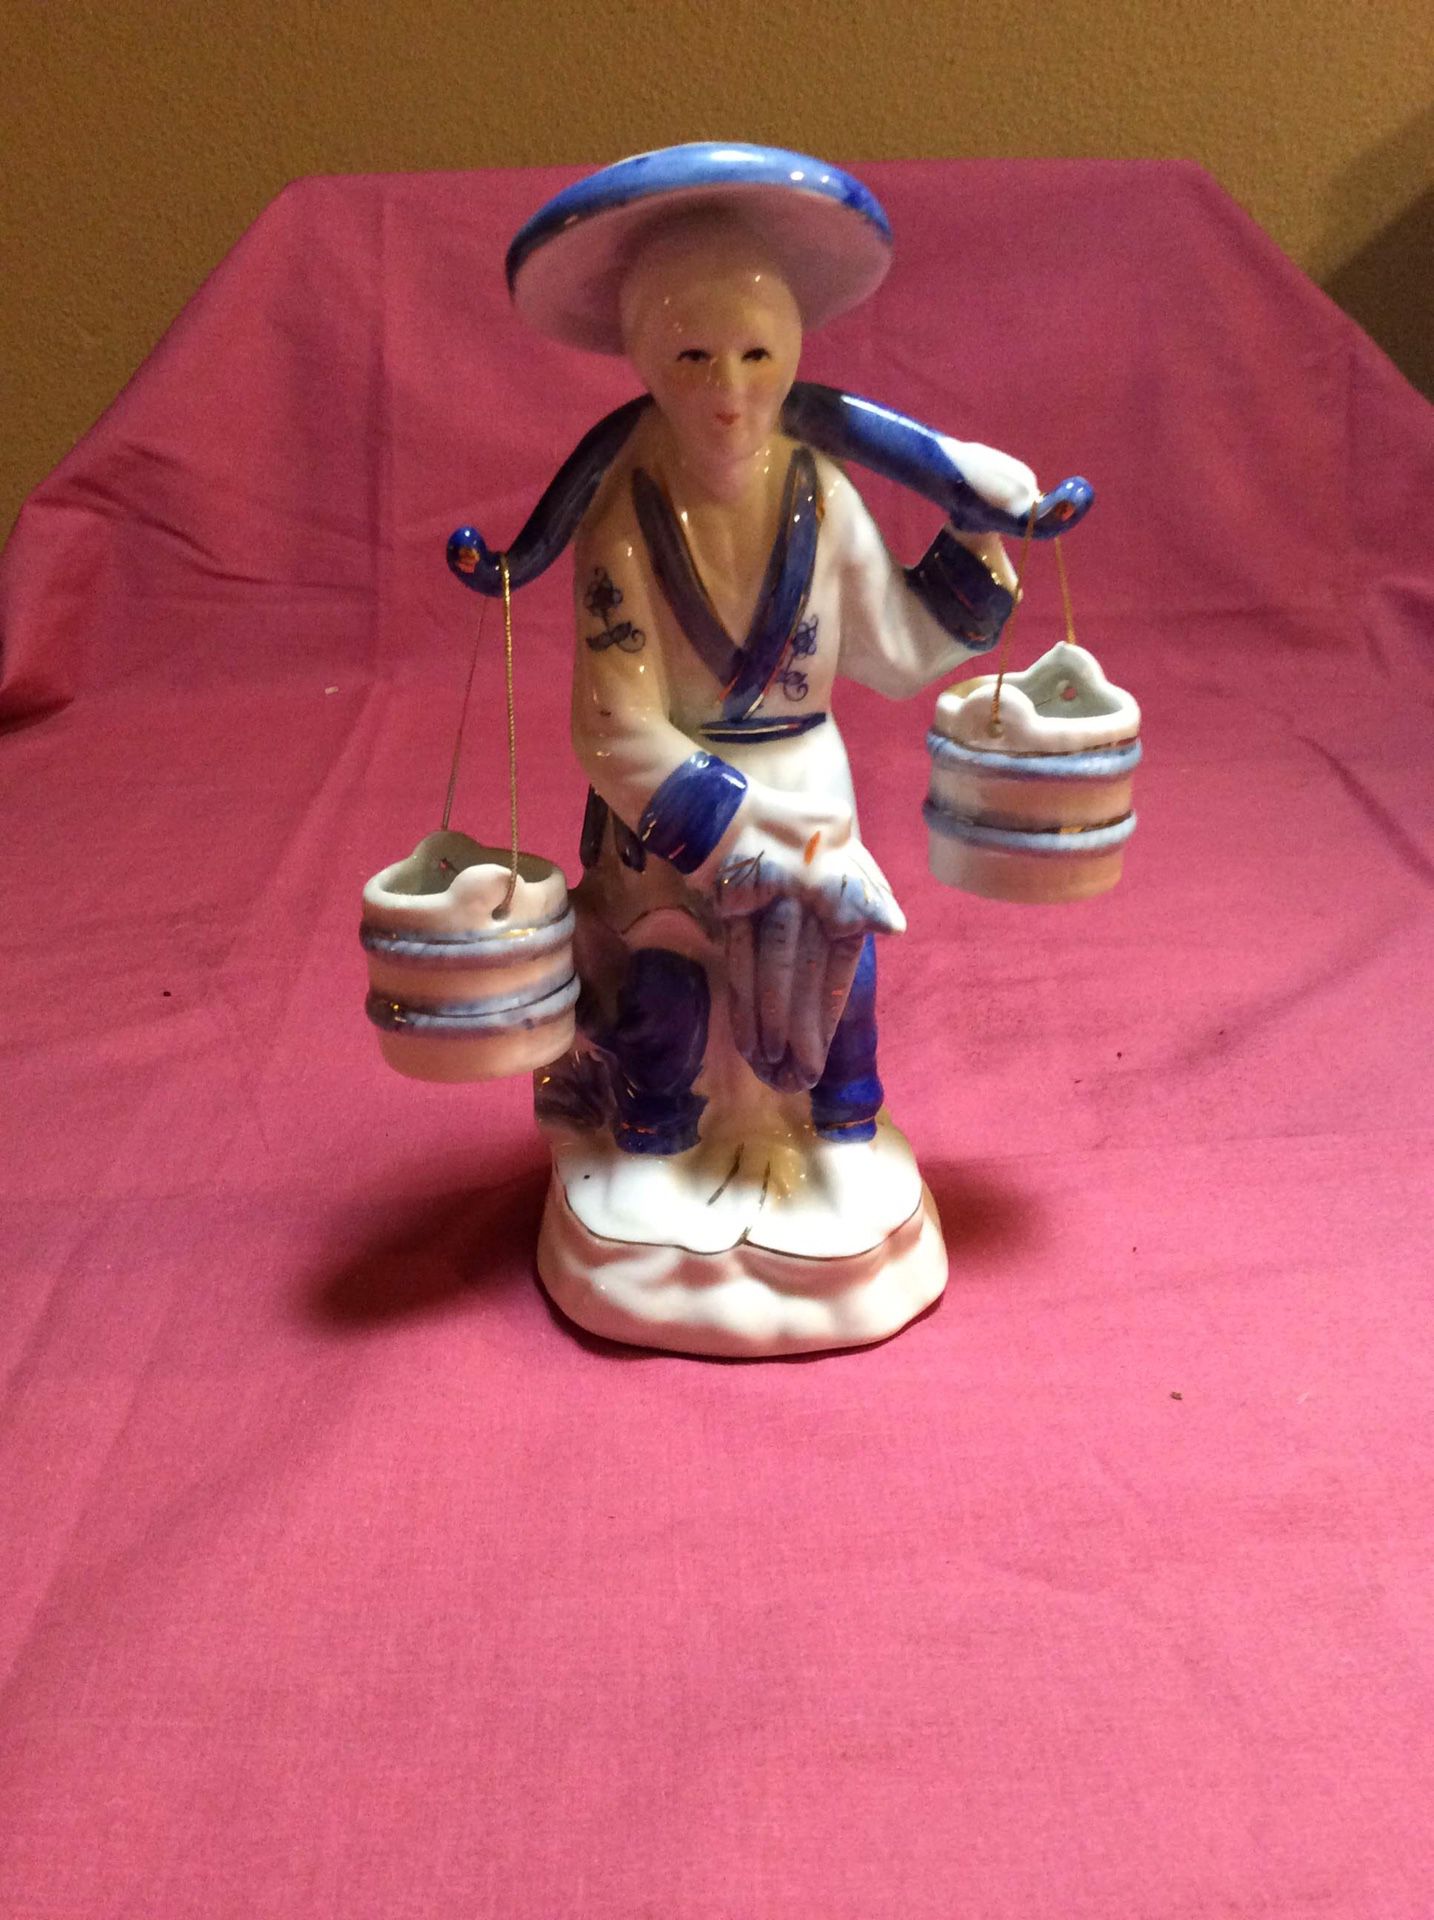 Chinese water figurine